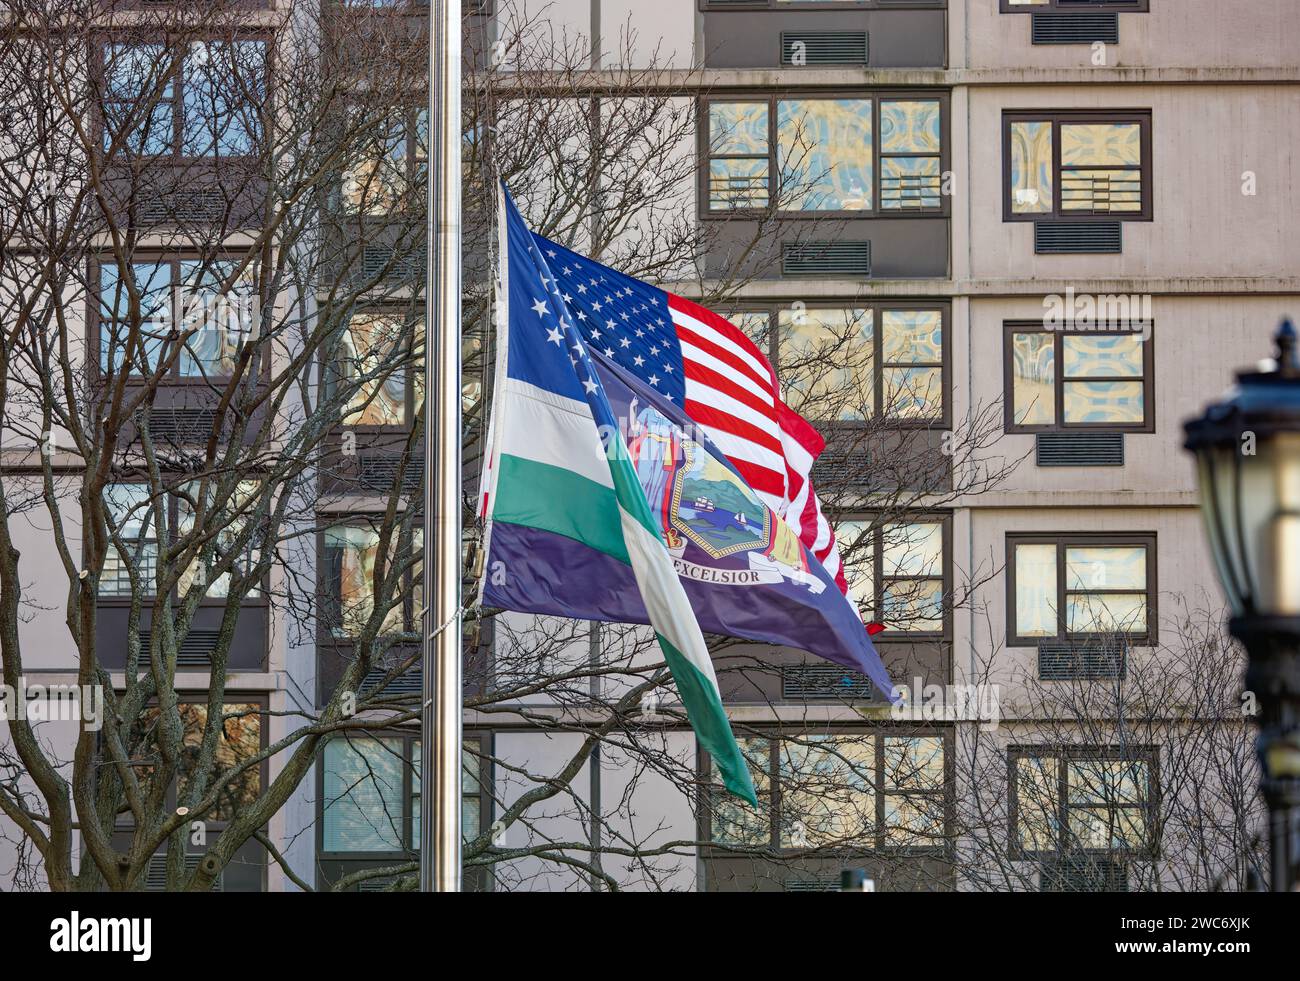 Am New York City Police Memorial in Battery Park City fliegen Flaggen der Vereinigten Staaten, des Bundesstaates New York und des New York City Police Department. Stockfoto